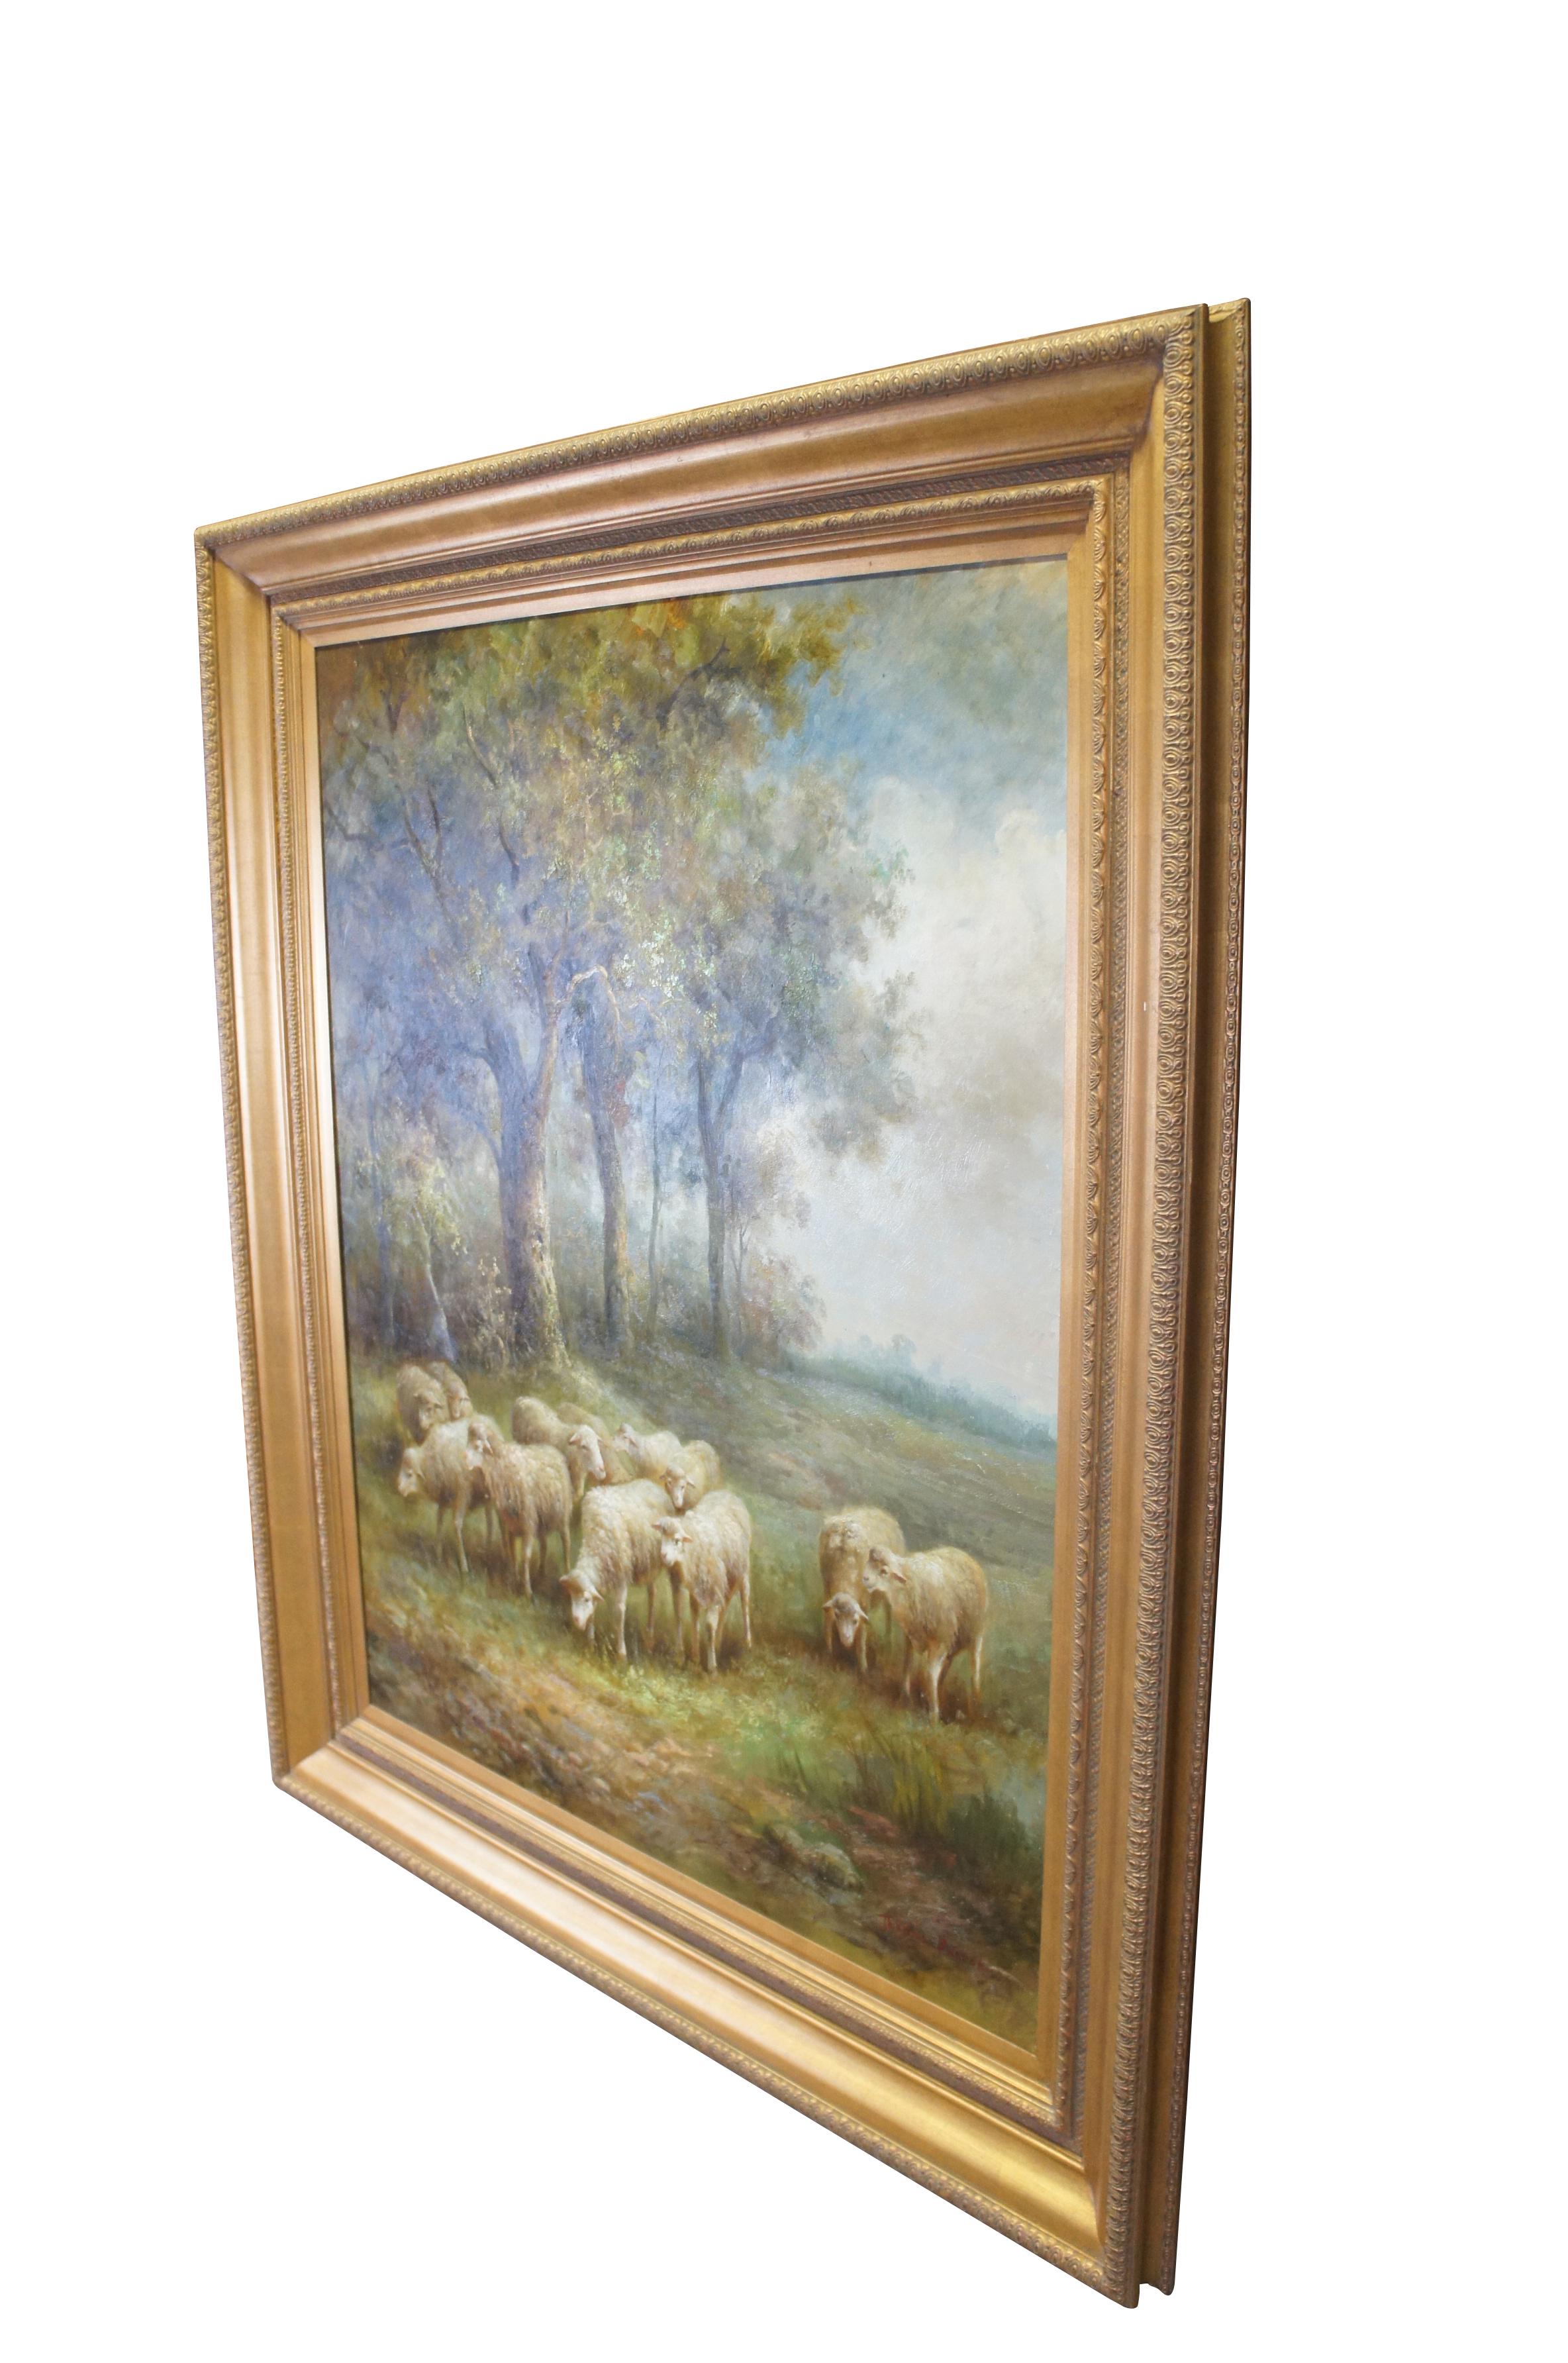 Eine sehr große und beeindruckende Vintage Thomas Barron Ölgemälde auf Leinwand mit einer Herde von Schafen / Lamm weiden am Rande eines Waldes in der Landschaft.  Eingerahmt in einem eleganten Goldrahmen.

Abmessungen:
74,5